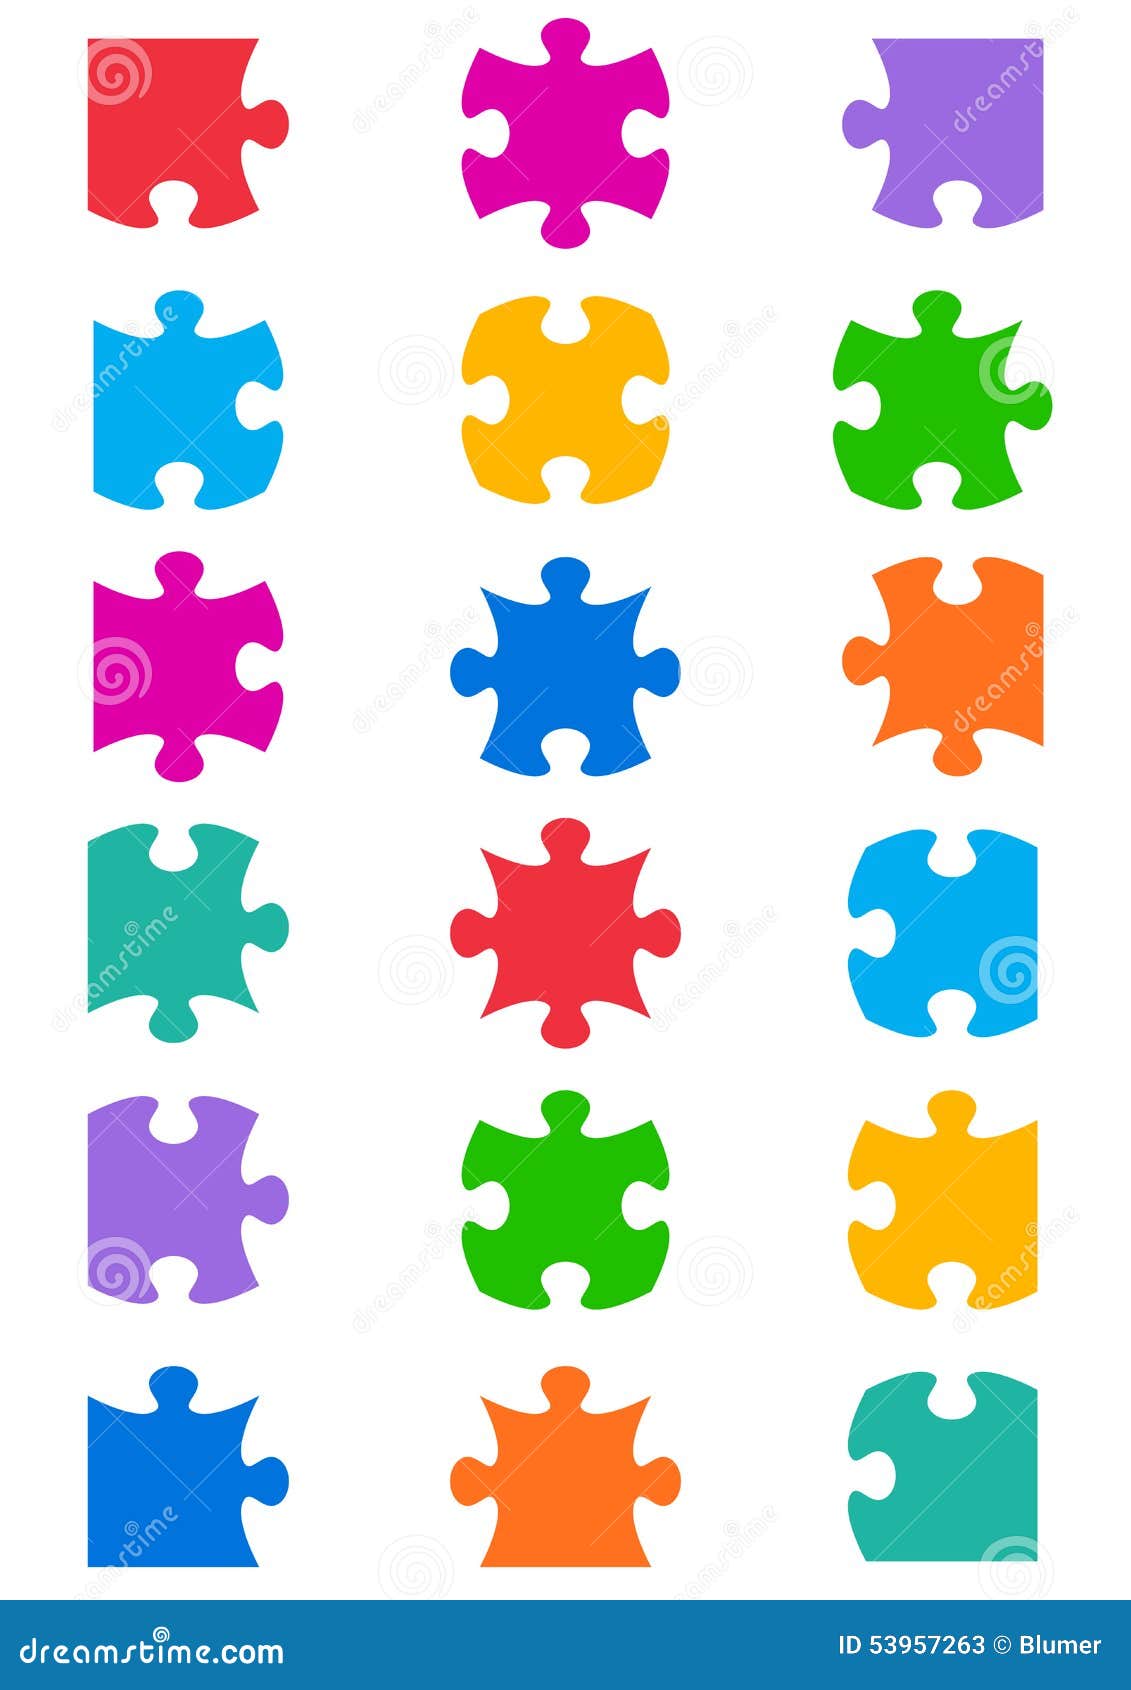 Tutte le forme possibili del puzzle